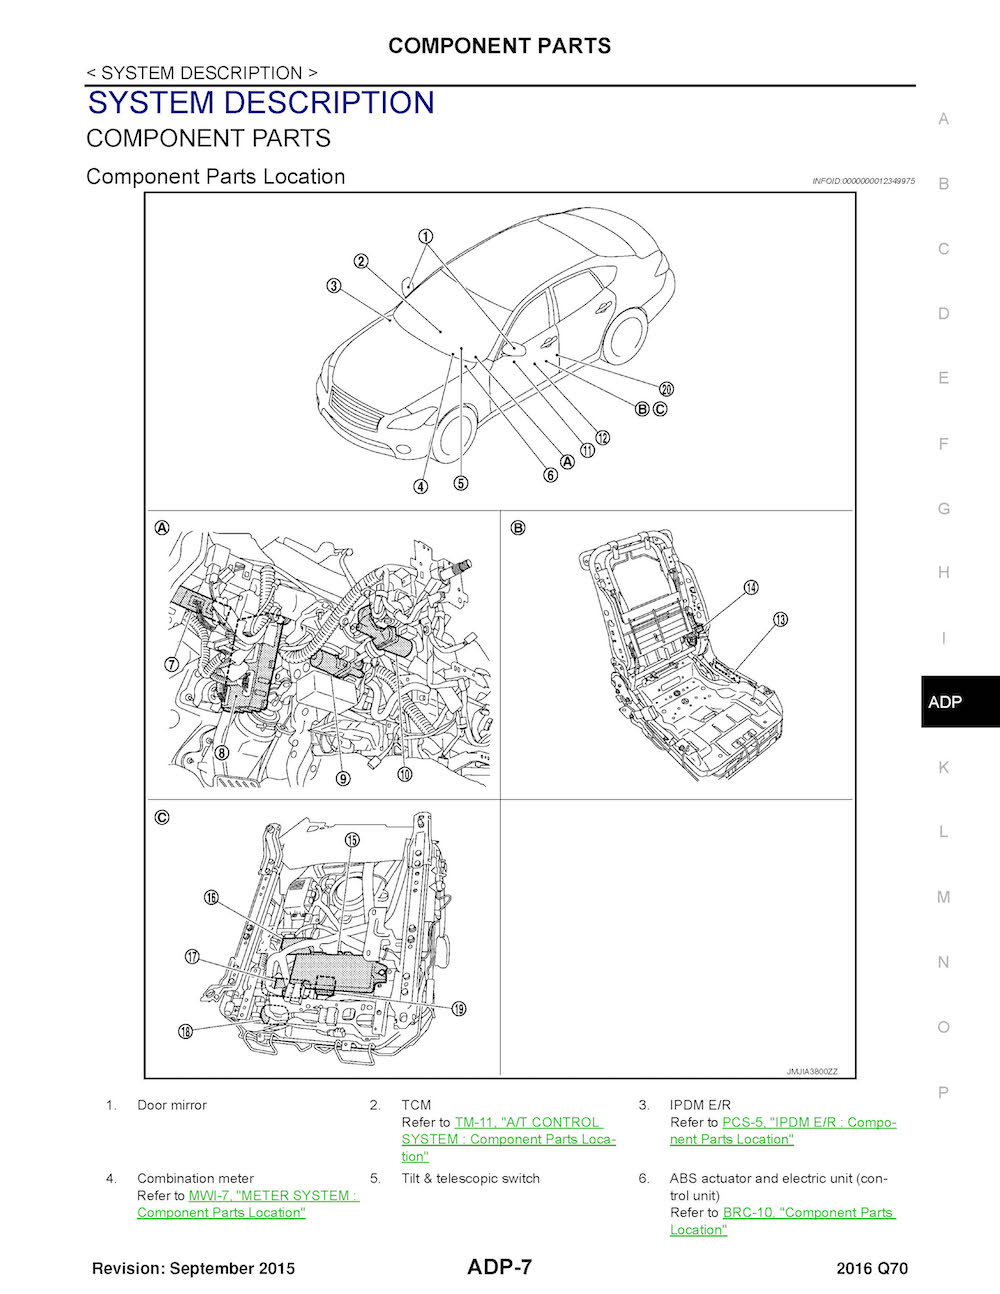 2016 Infiniti Q70 Repair Manual, Component Parts Location